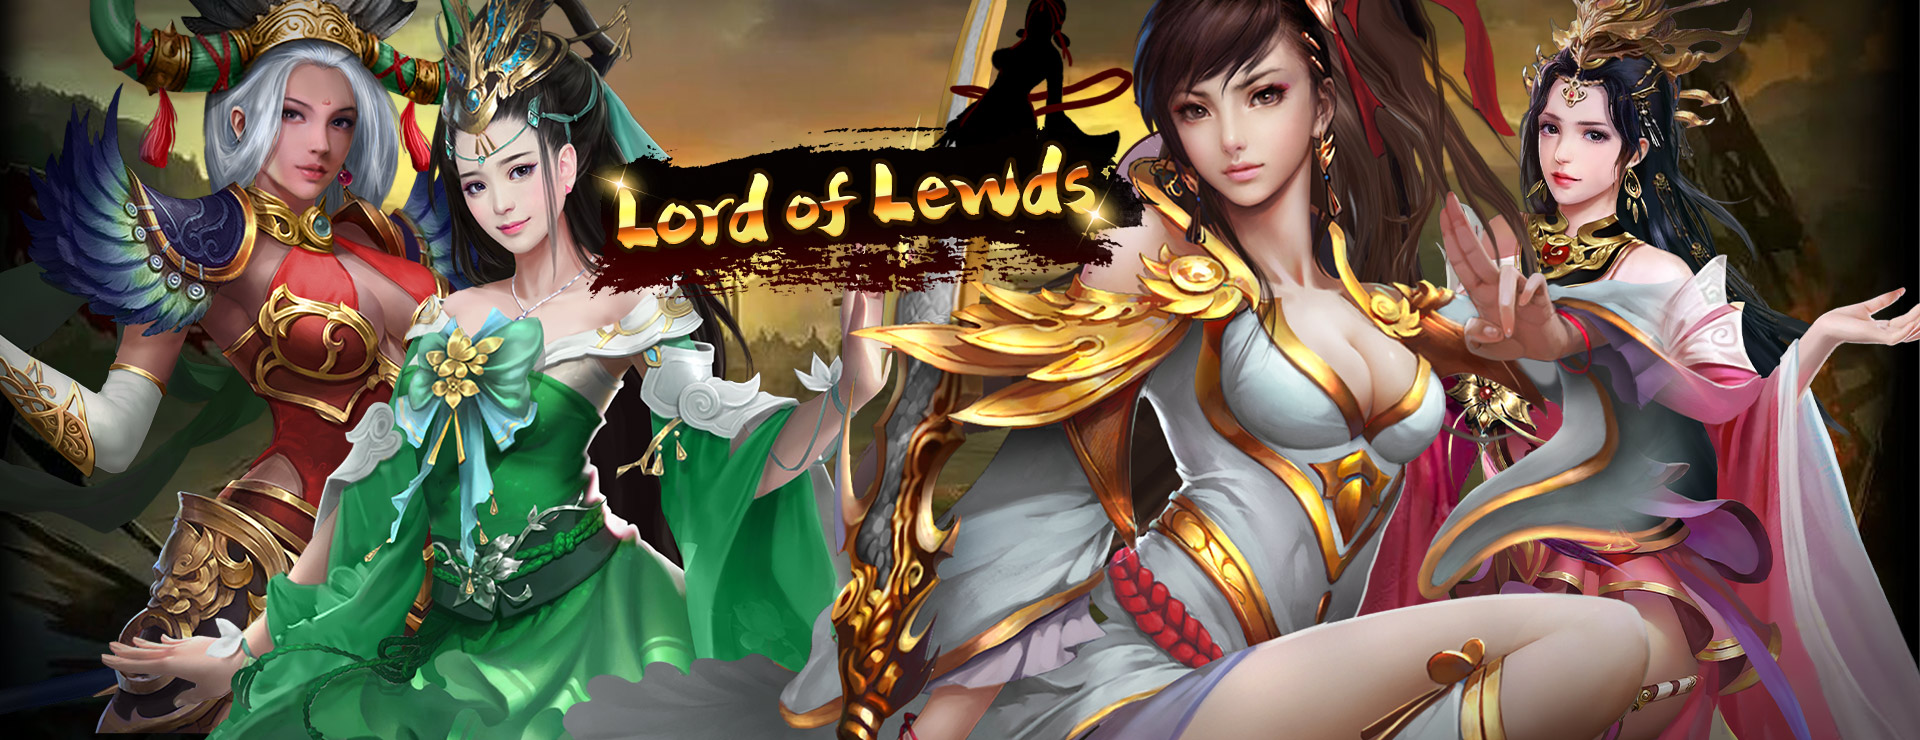 Lord of Lewds Game - Strategie Spiel